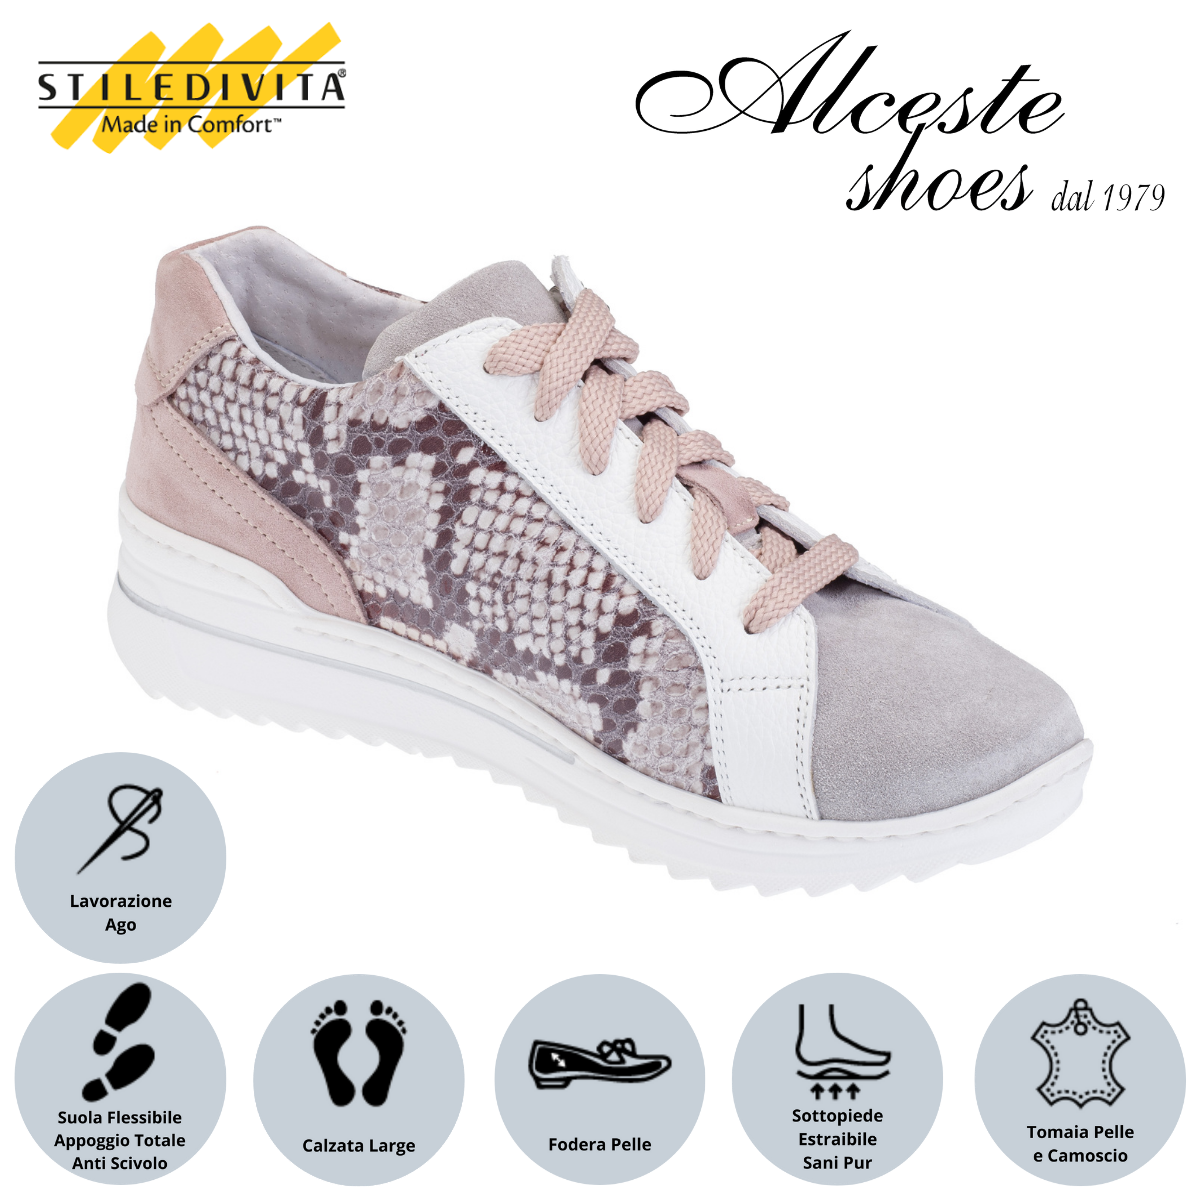 Sneakers Lacci e Cerniera Traforate "Stiledivita" Art. 7367 Pelle Bianco Camoscio Perla e Camoscio Stampato Pitone Alceste Shoes 61